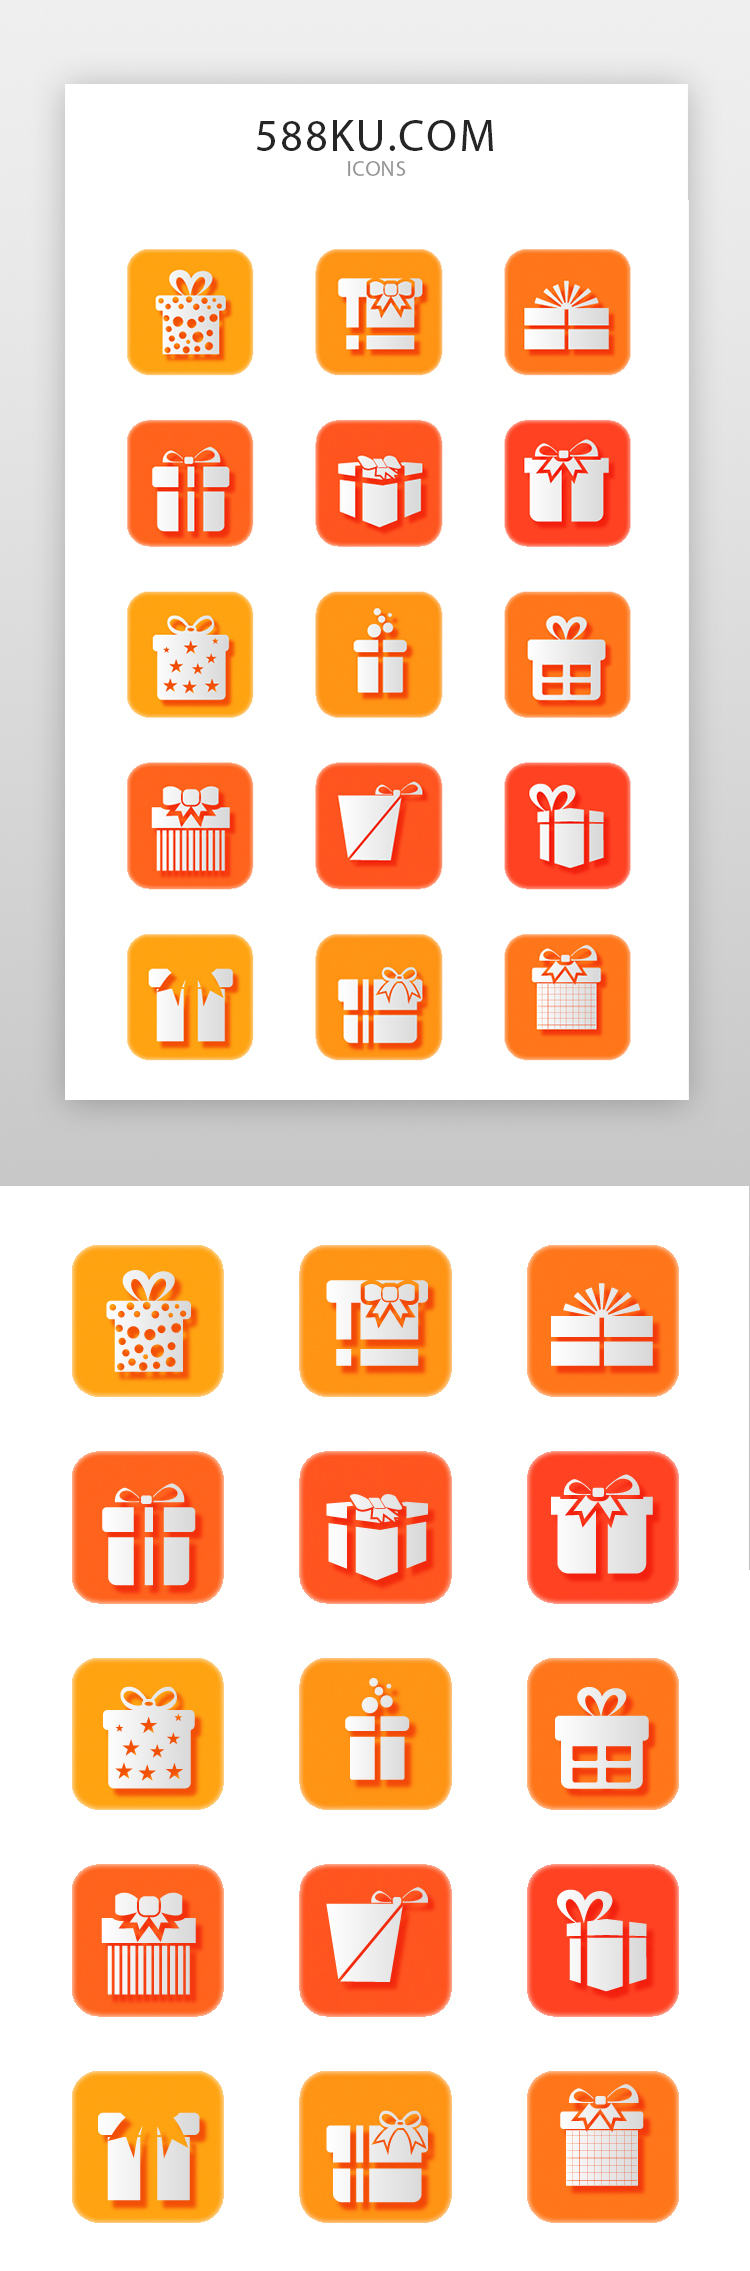 礼物、蝴蝶结、包装盒图标简约橙色、白色礼物、蝴蝶结、包装盒图片